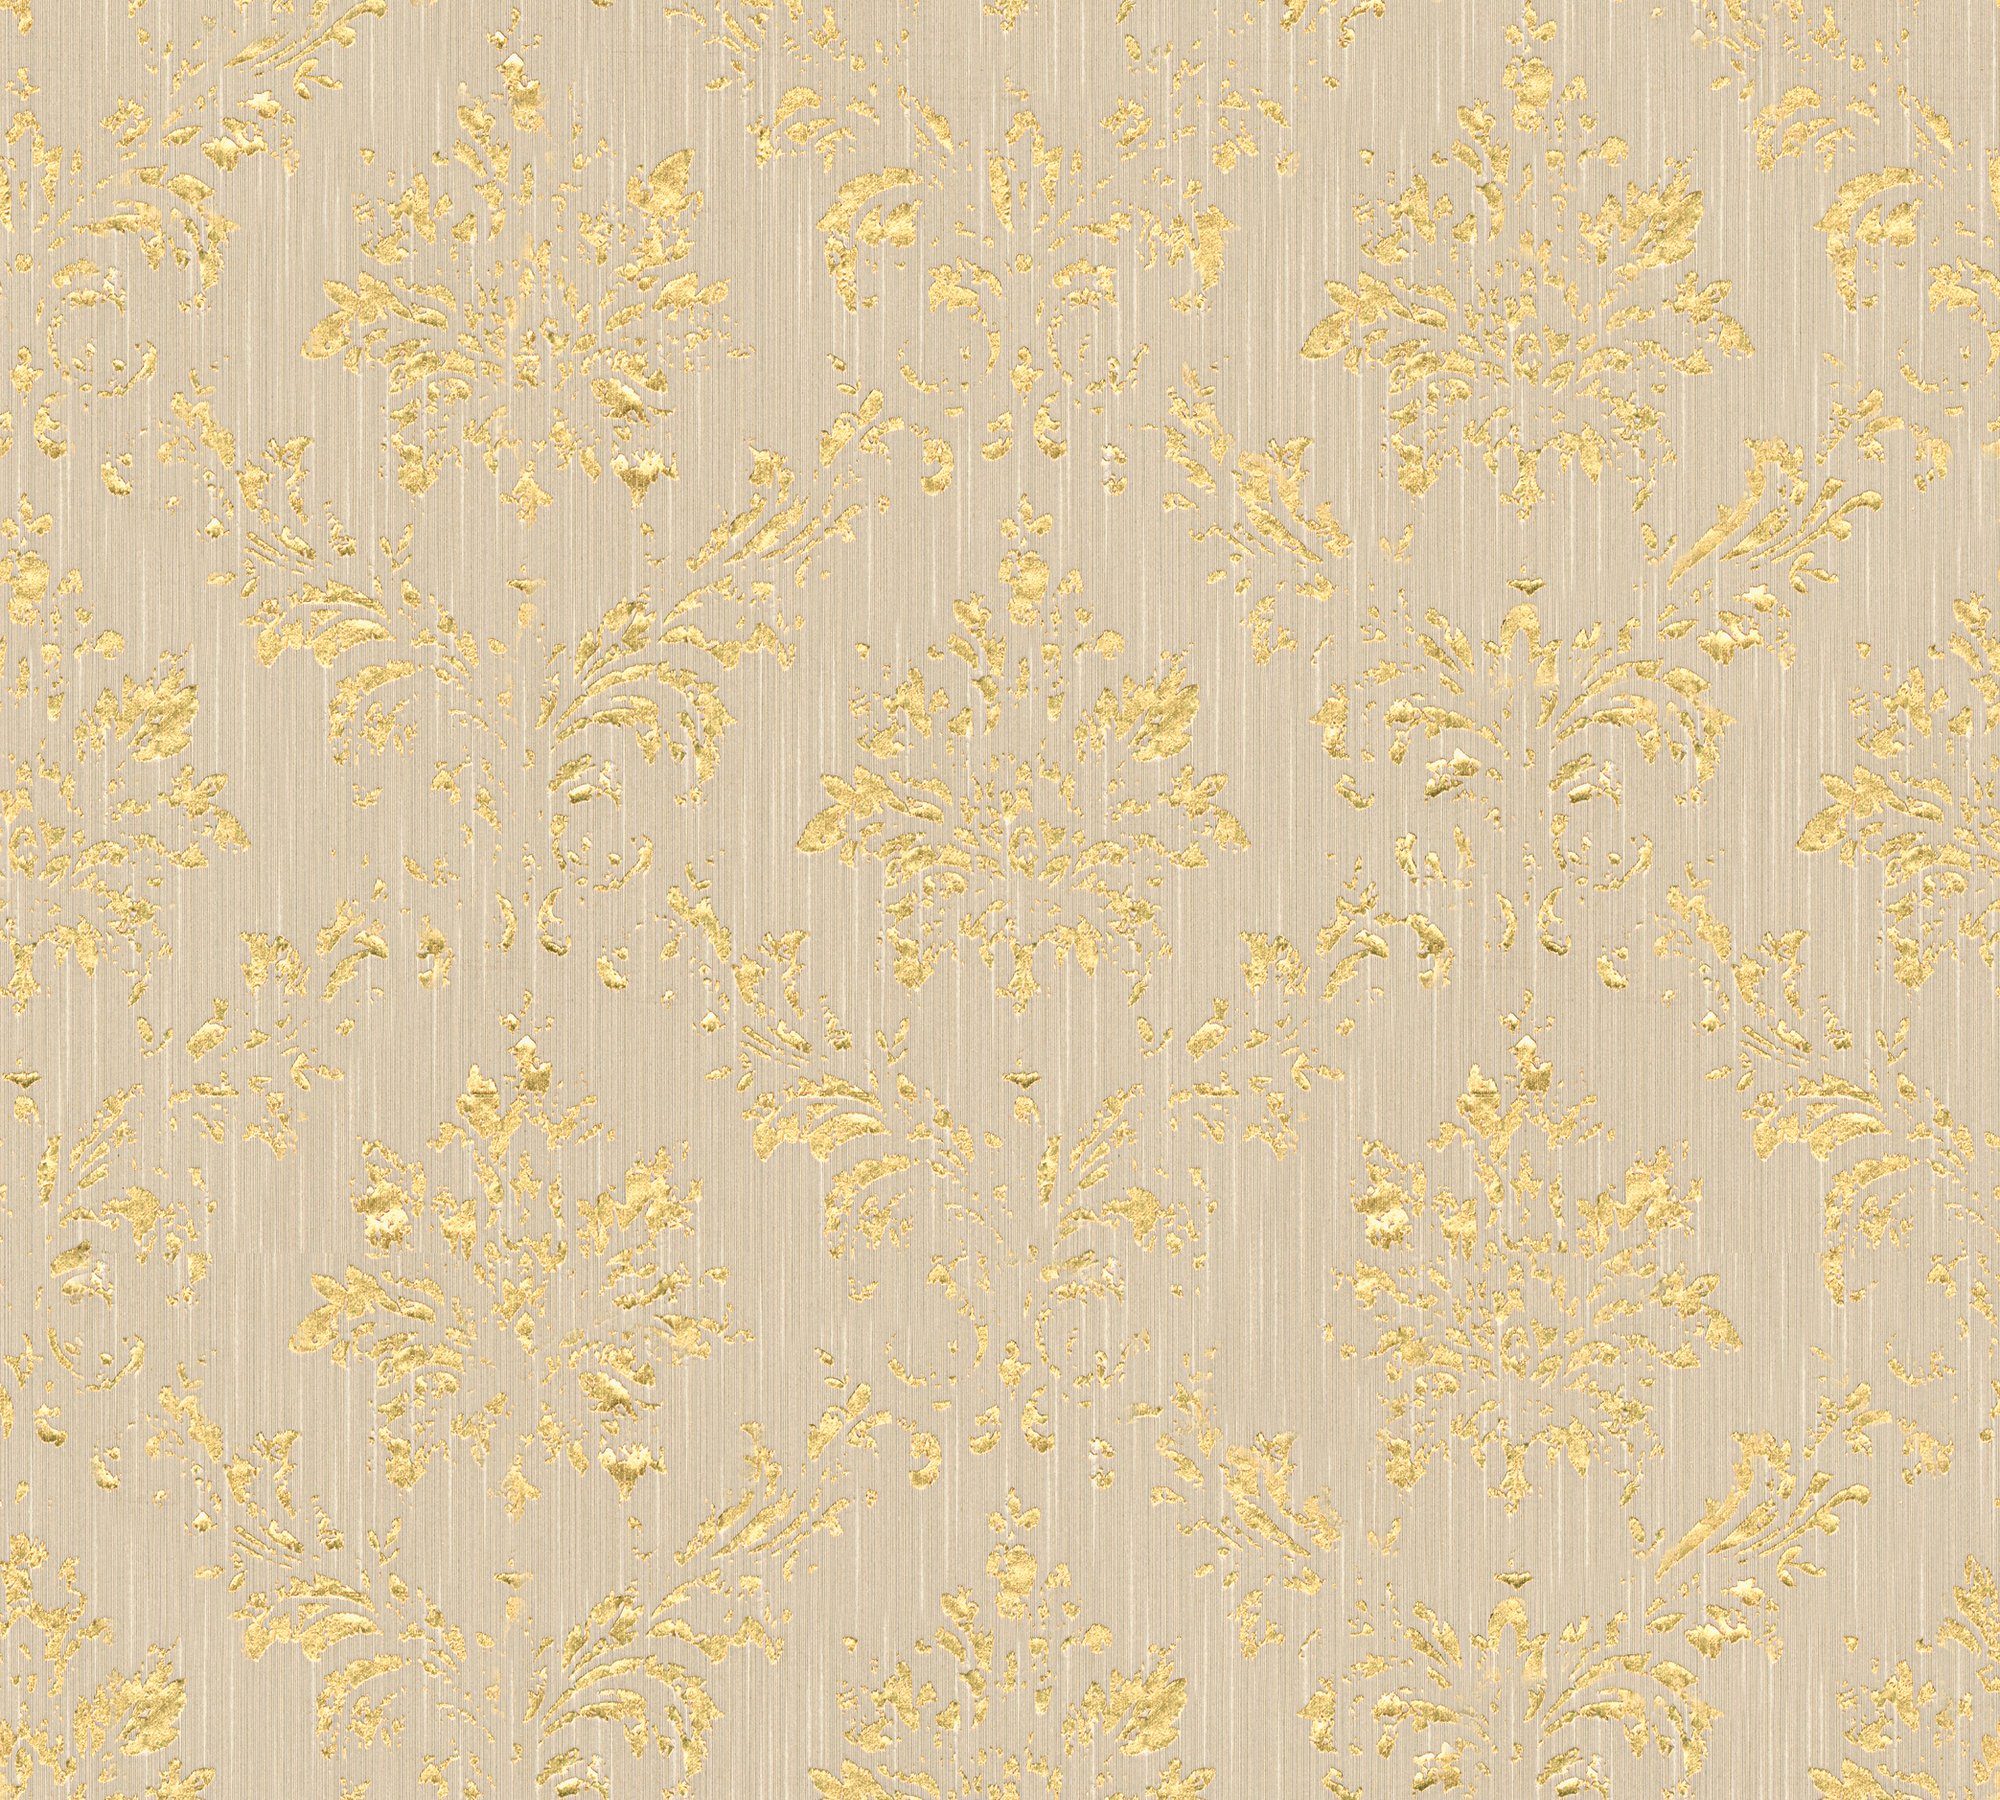 Tapete Architects Paper A.S. matt, beige/gold Textiltapete Barock, Ornament Création Metallic samtig, Silk, Barock glänzend,